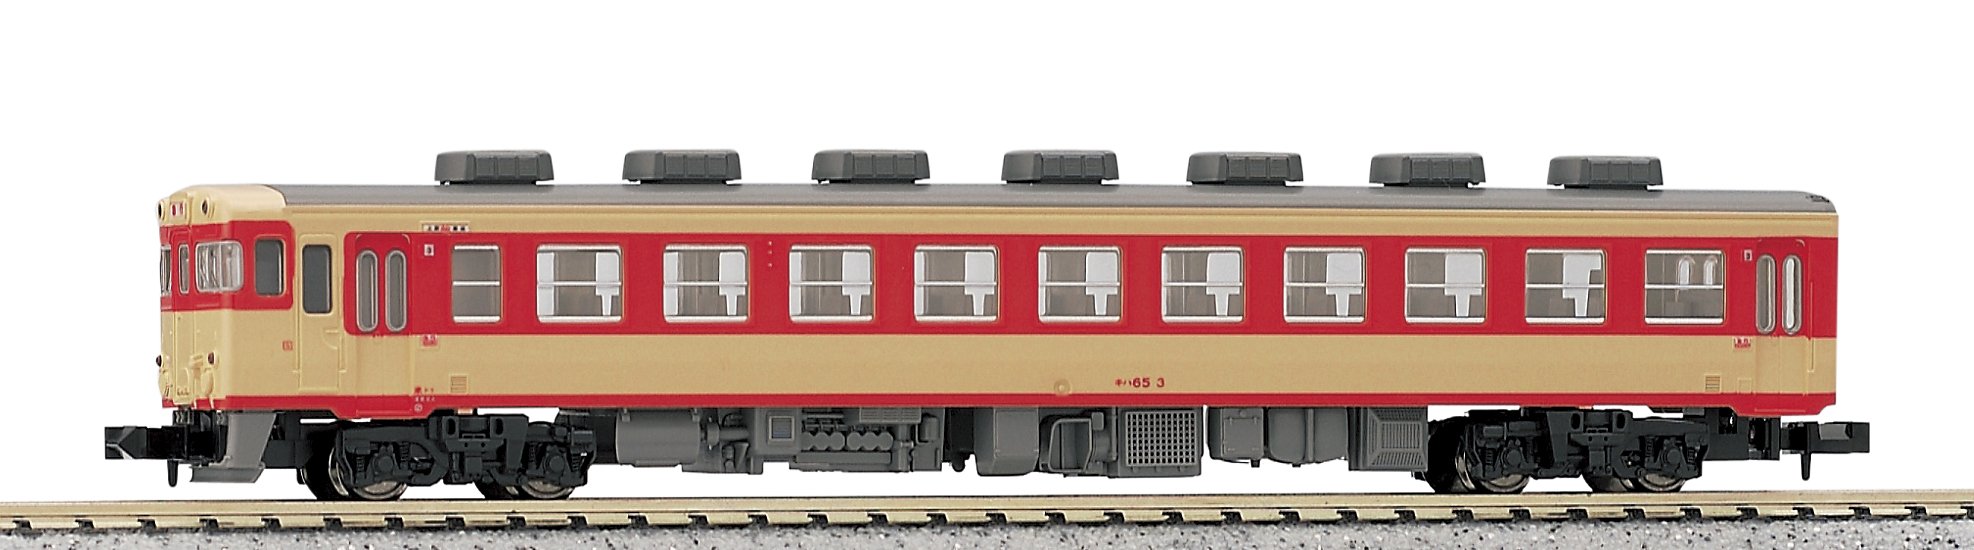 Kato Kiha65 6051 Diesel Car - N Gauge Railway Model